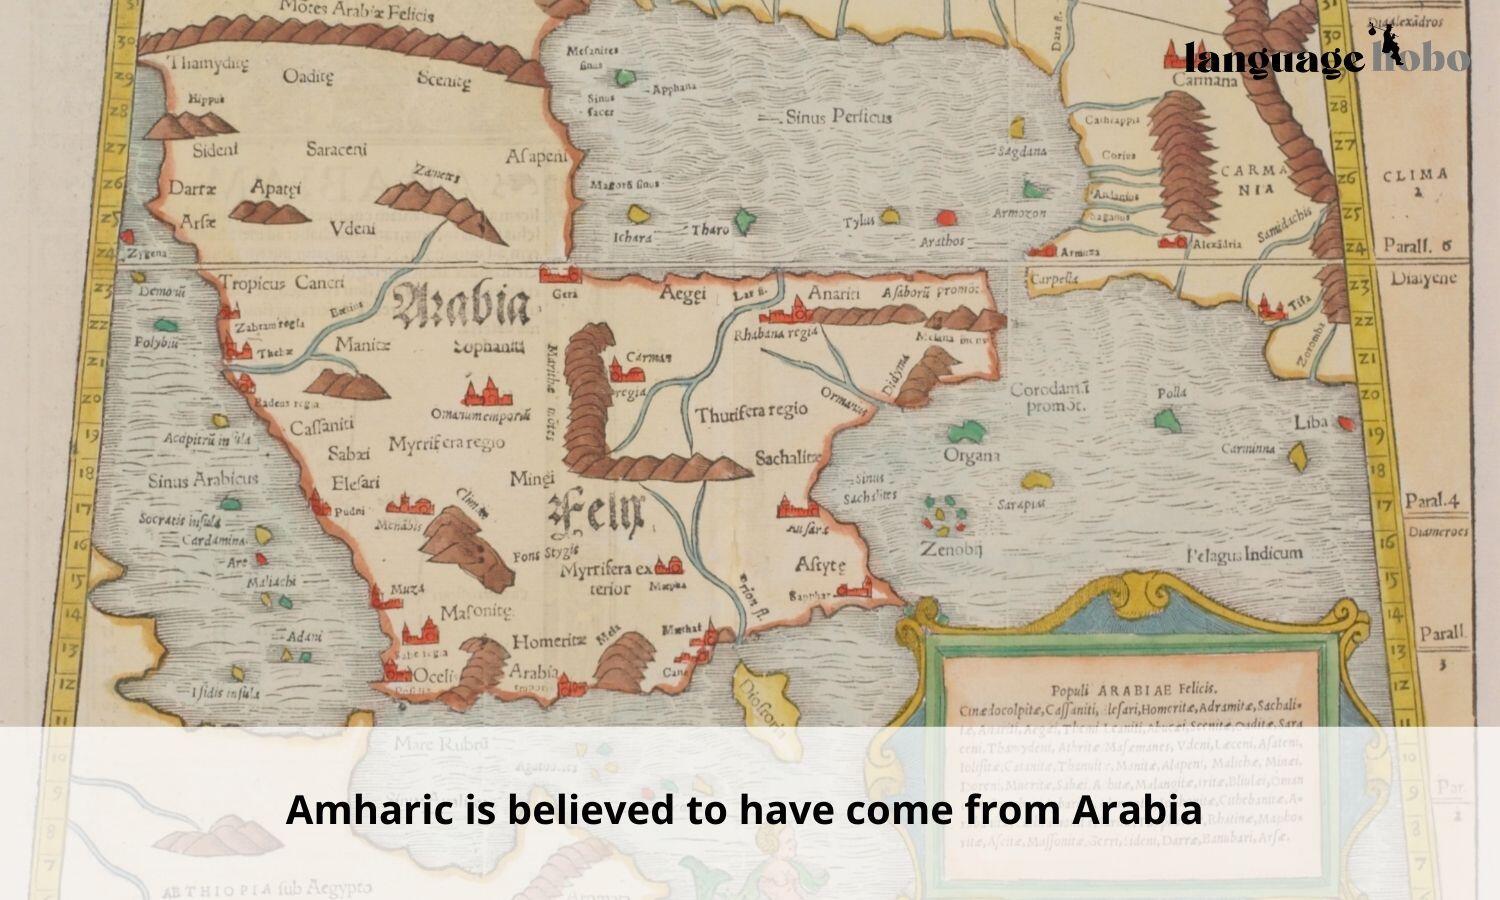 Amharic originated in Arabia